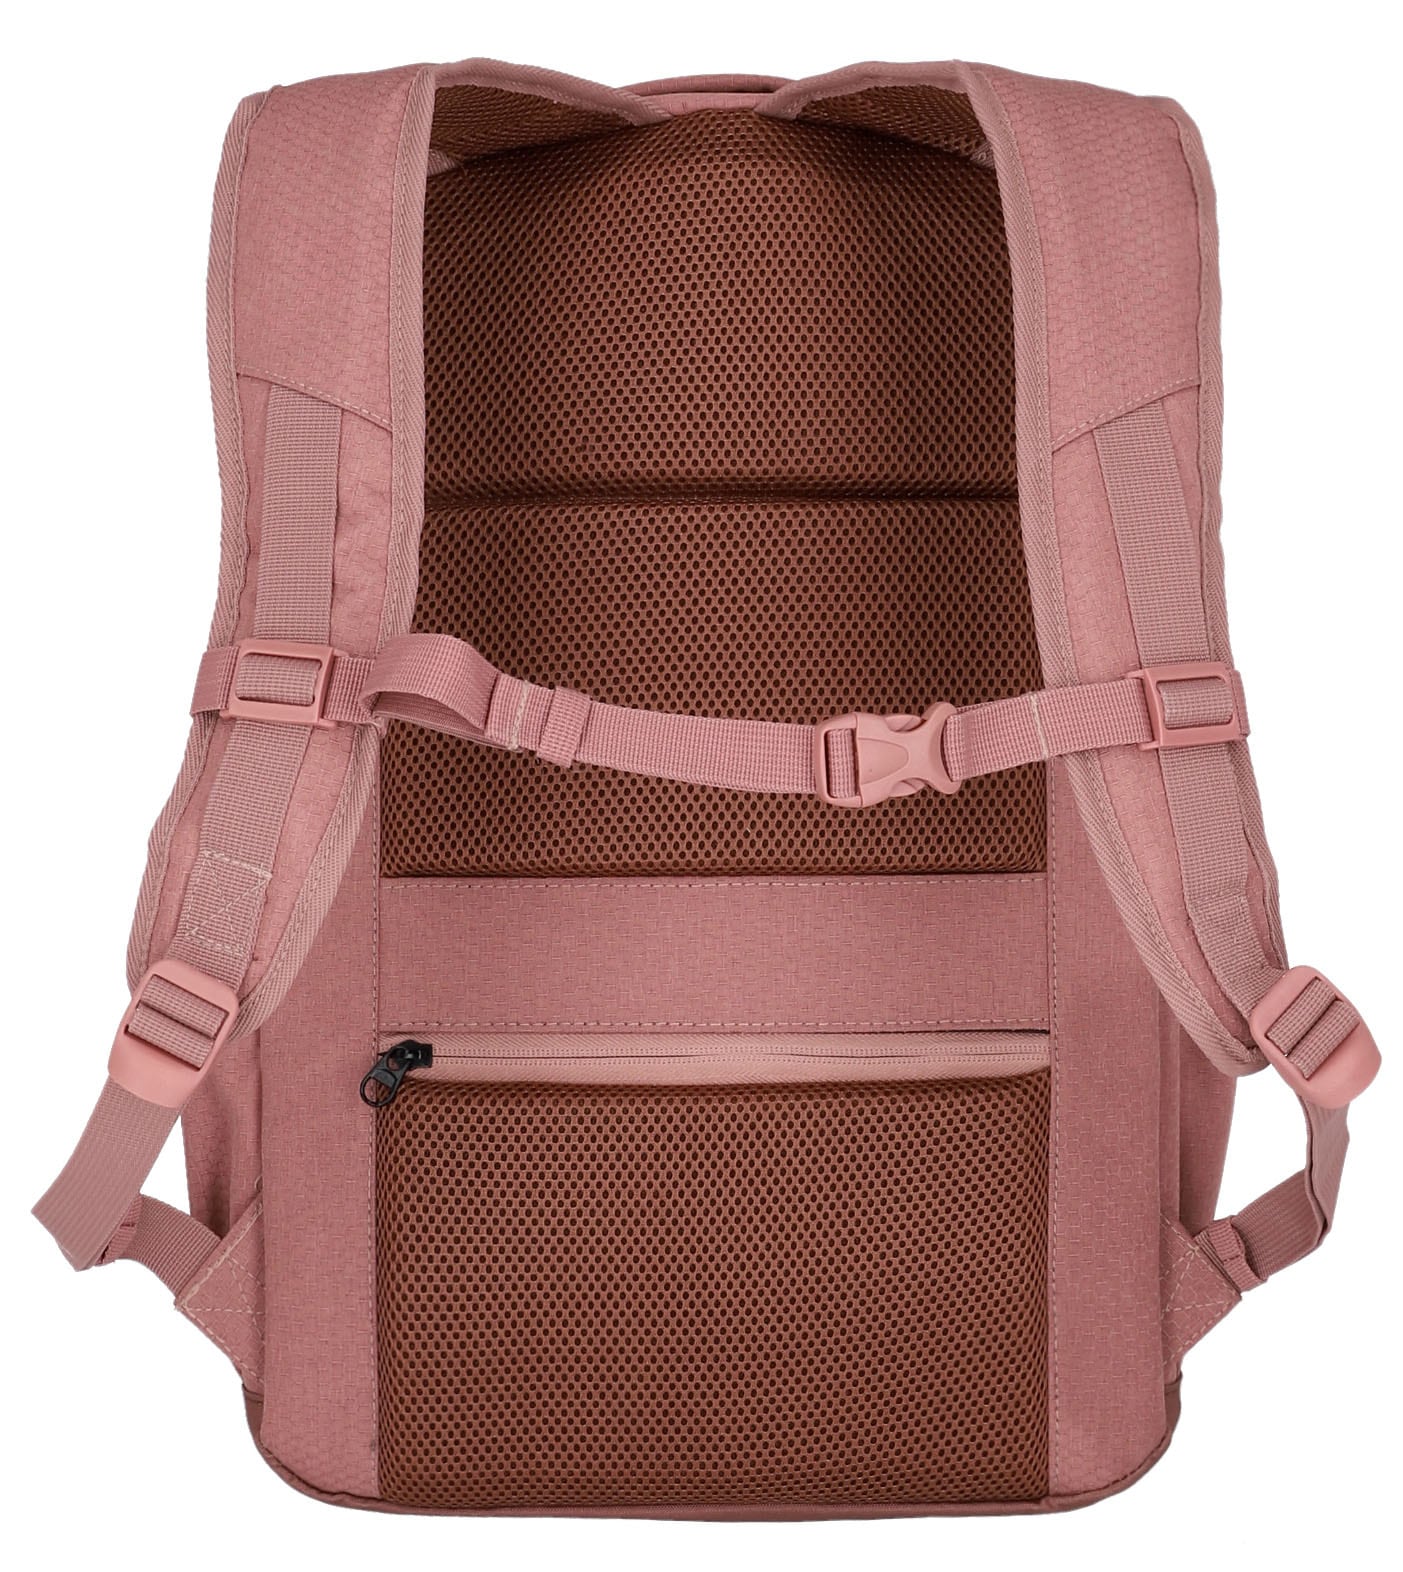 travelite Laptoprucksack »Kick Off L, 45 cm, rosé«, Arbeitsrucksack Schulrucksack Streetpack mit 15,6-Zoll Laptopfach